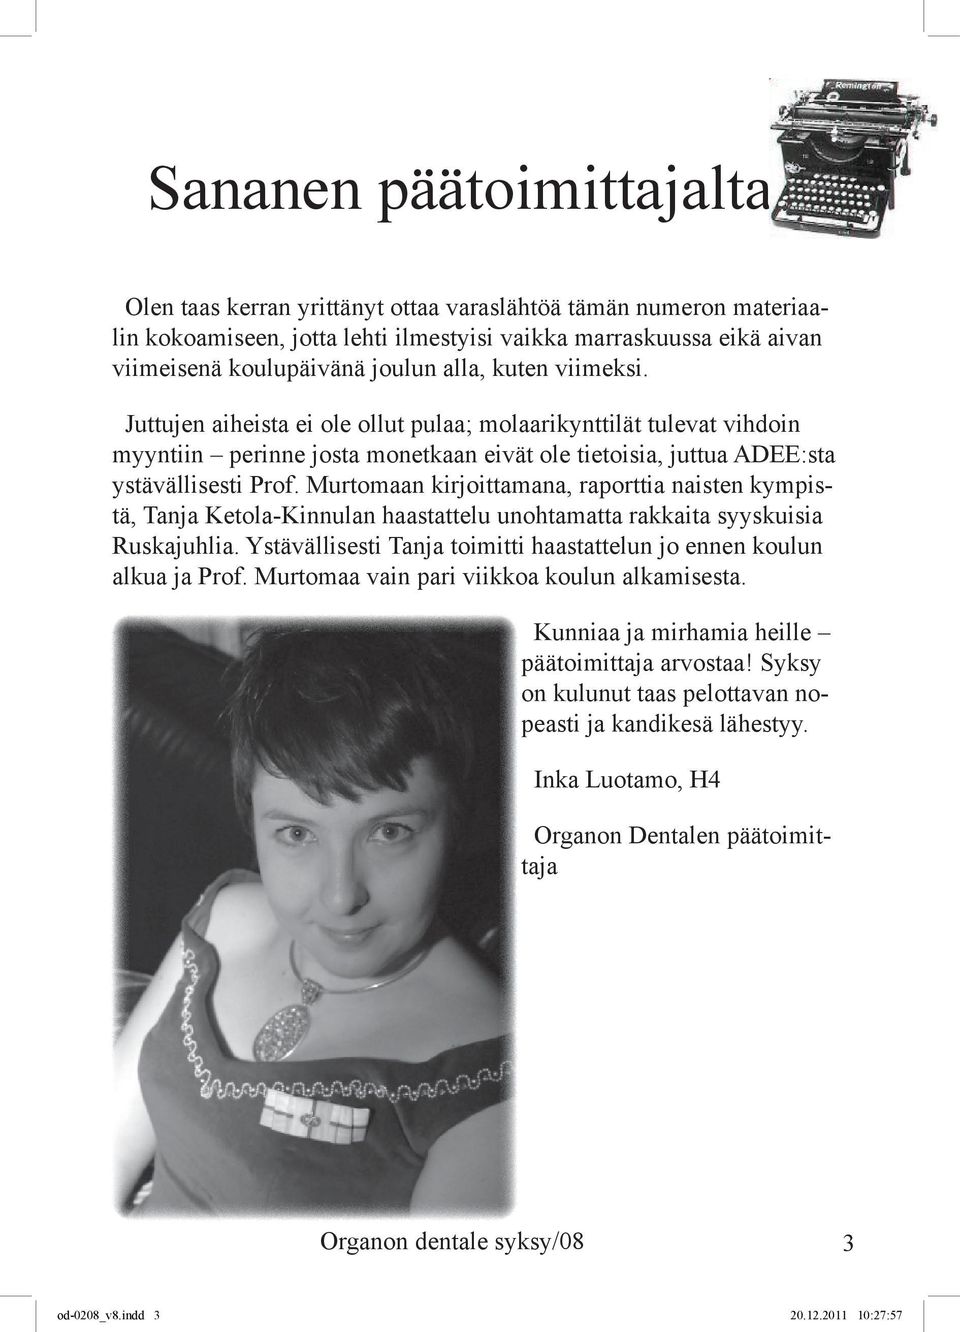 Murtomaan kirjoittamana, raporttia naisten kympistä, Tanja Ketola-Kinnulan haastattelu unohtamatta rakkaita syyskuisia Ruskajuhlia.